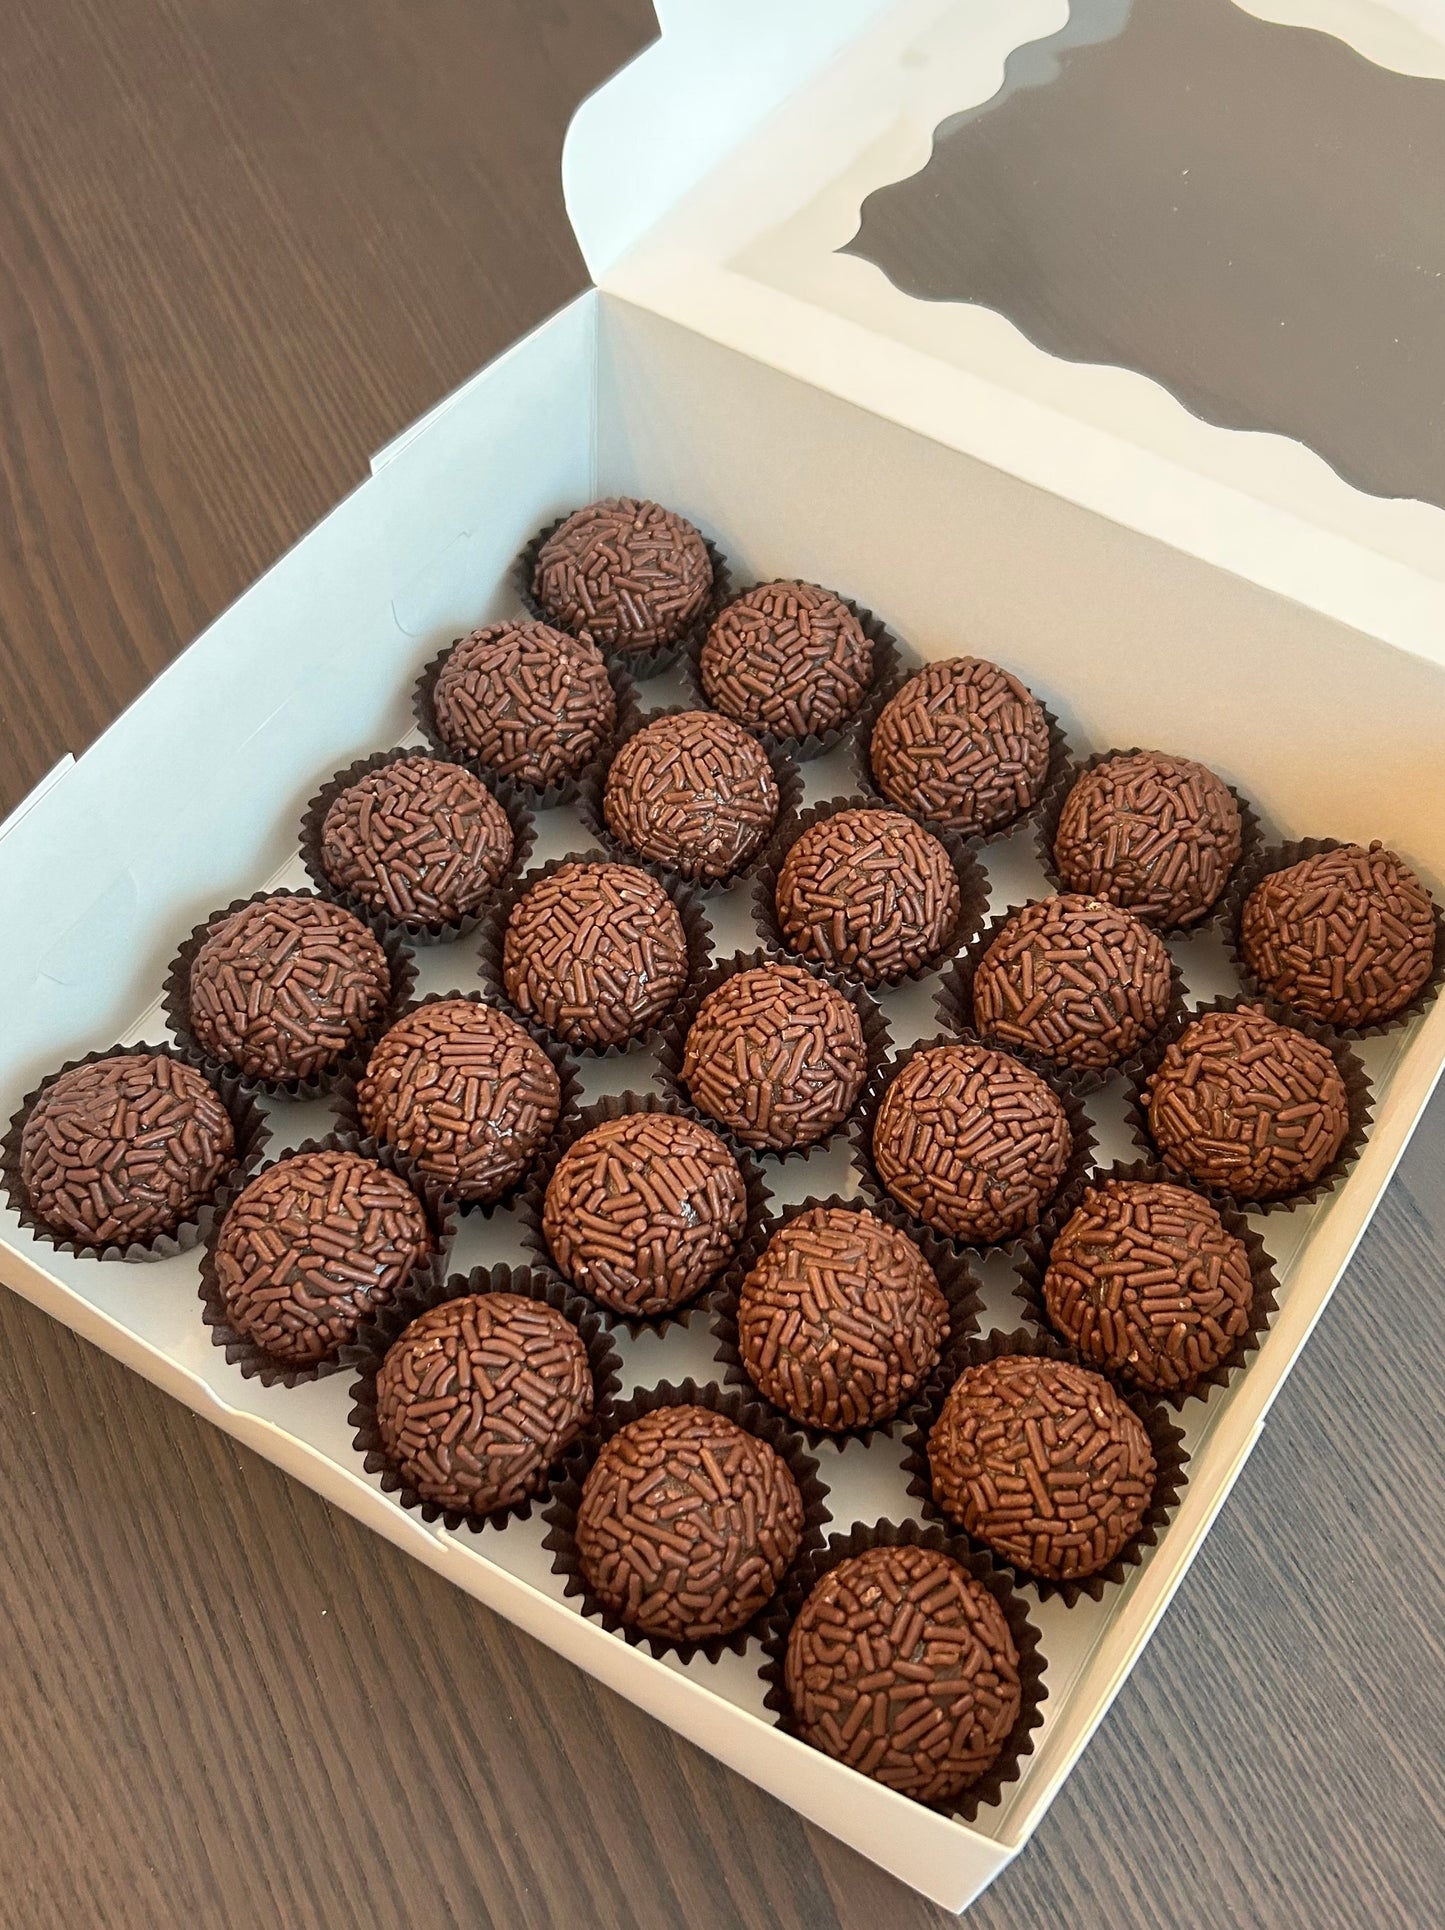 Brigadeiro Ball - Chocolate with Chocolate sprinkles